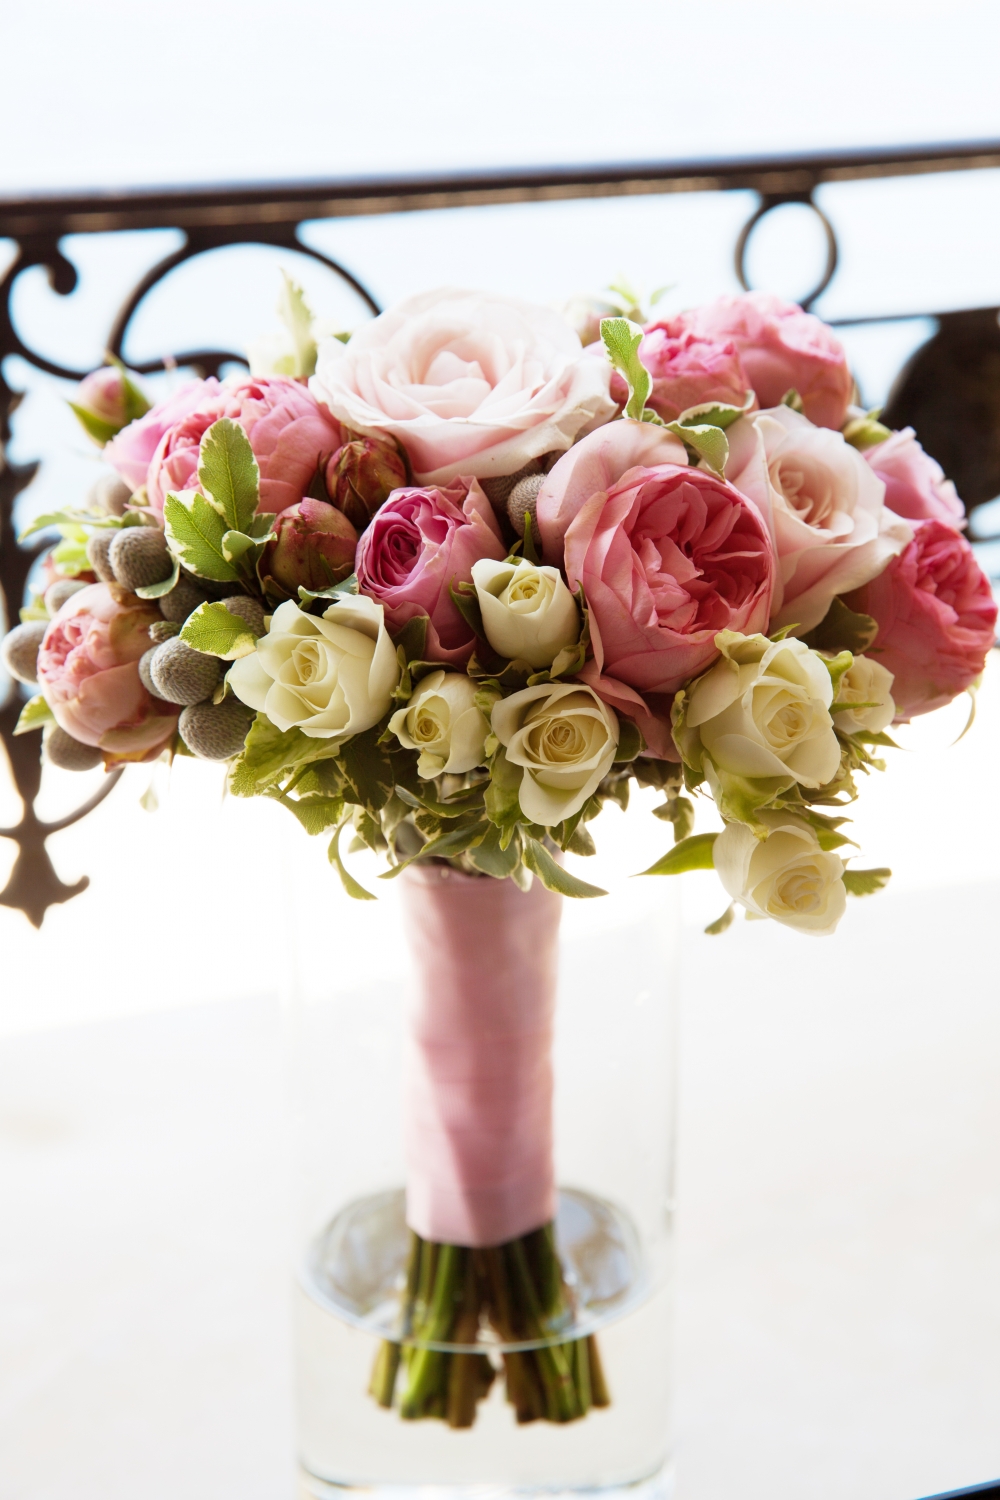 Сдержанный букет невесты с основным акцентом на розовый. Сочетание пионов с розами — изысканно, легко и романтично